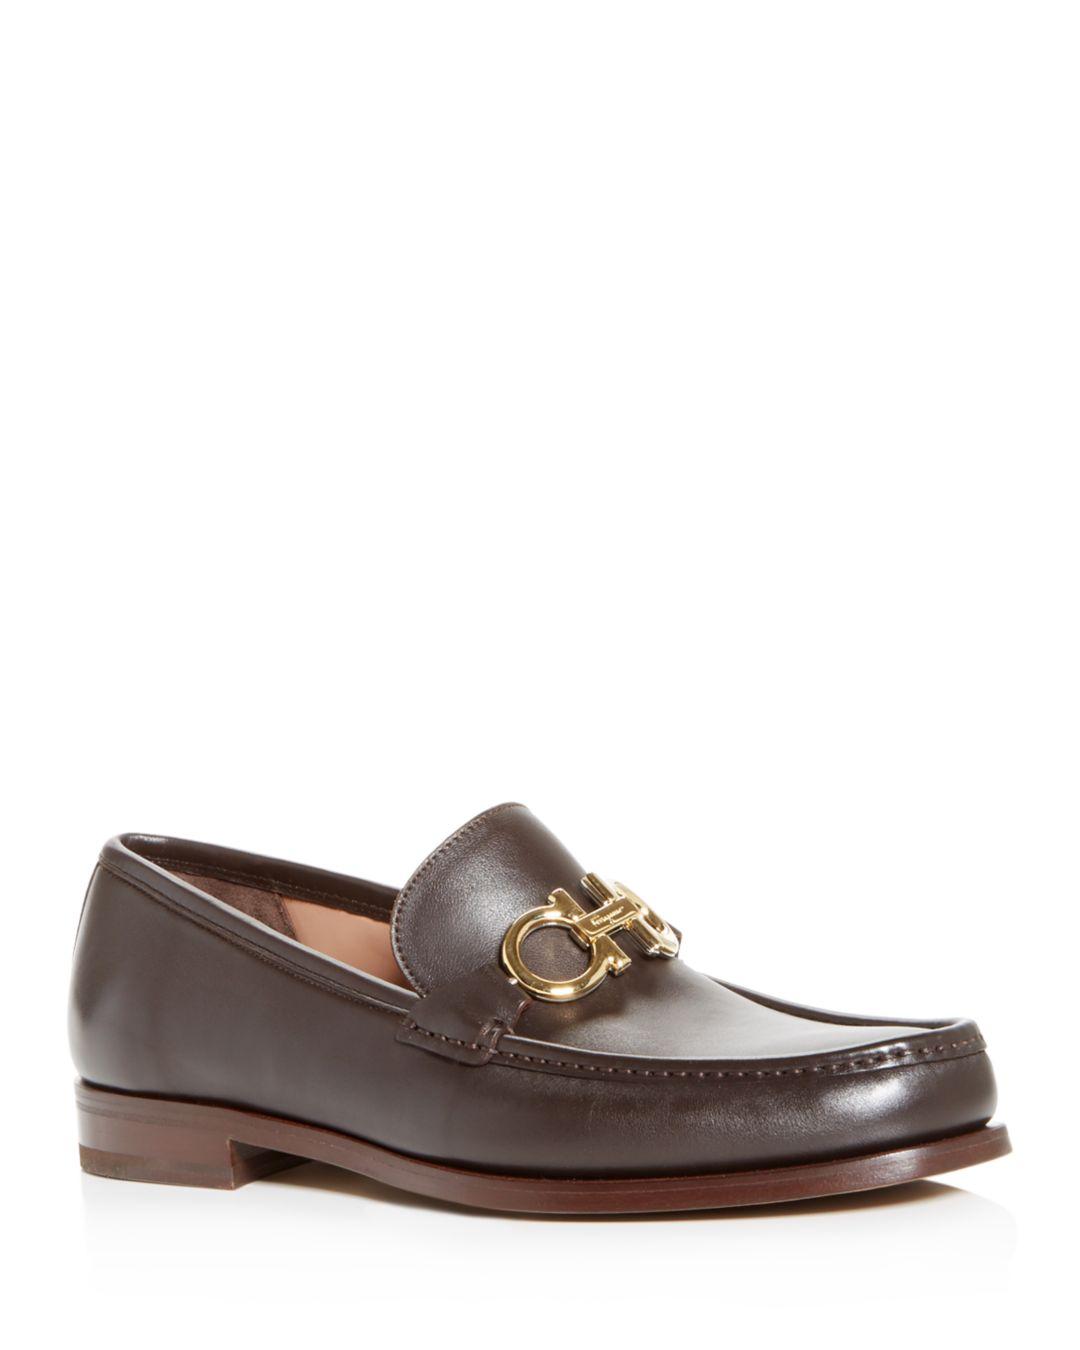 Ferragamo Men's Rolo Leather Moc - Toe Loafers in Brown for Men - Lyst